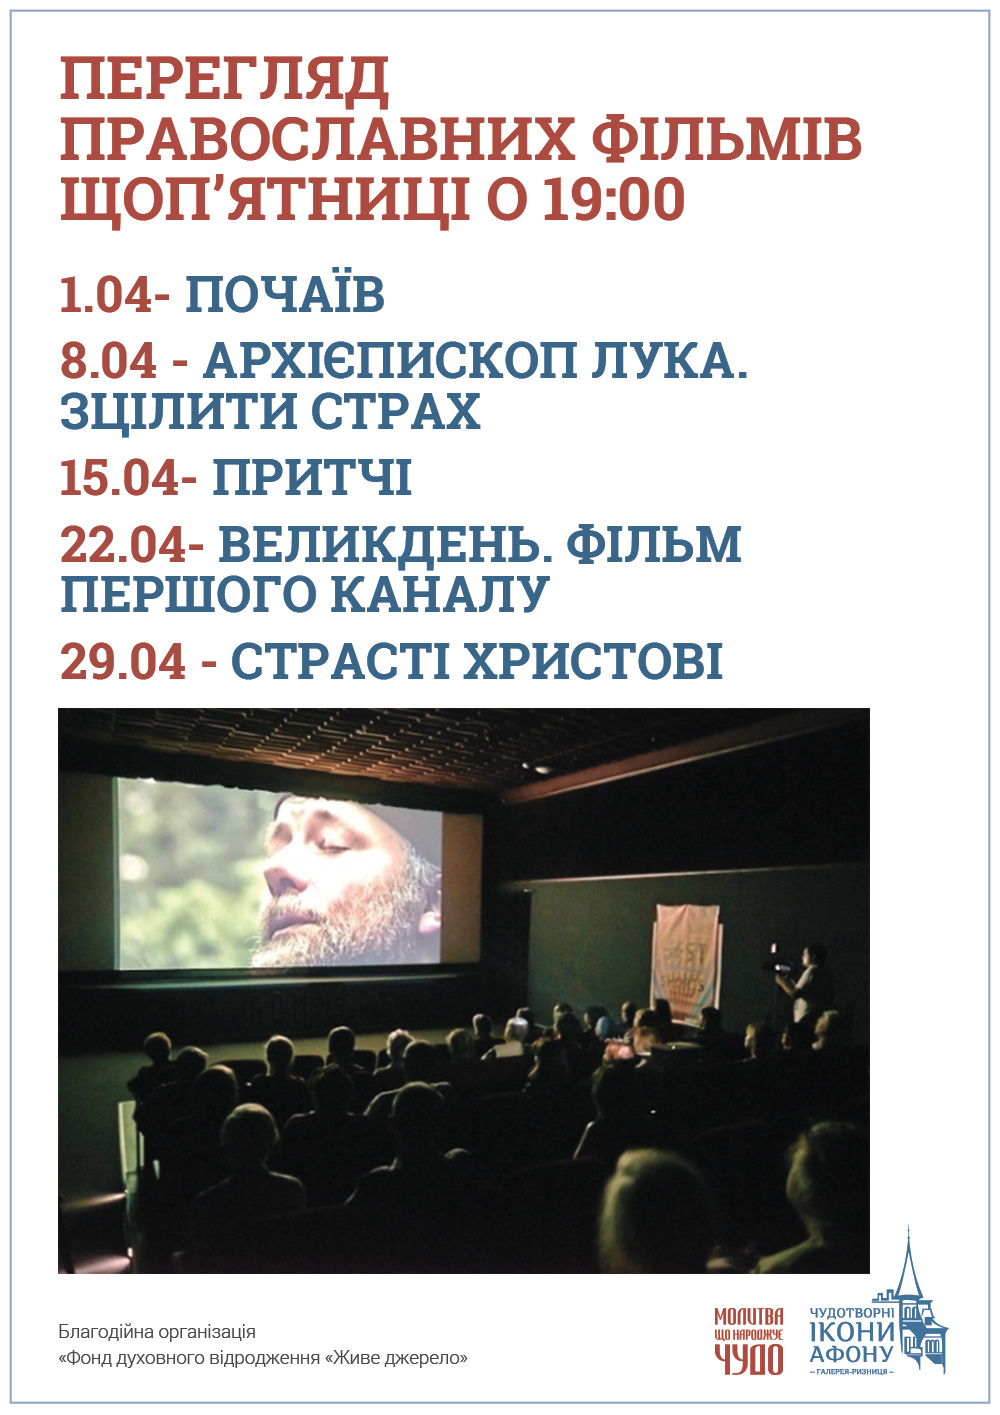 Просмотр православных фильмов